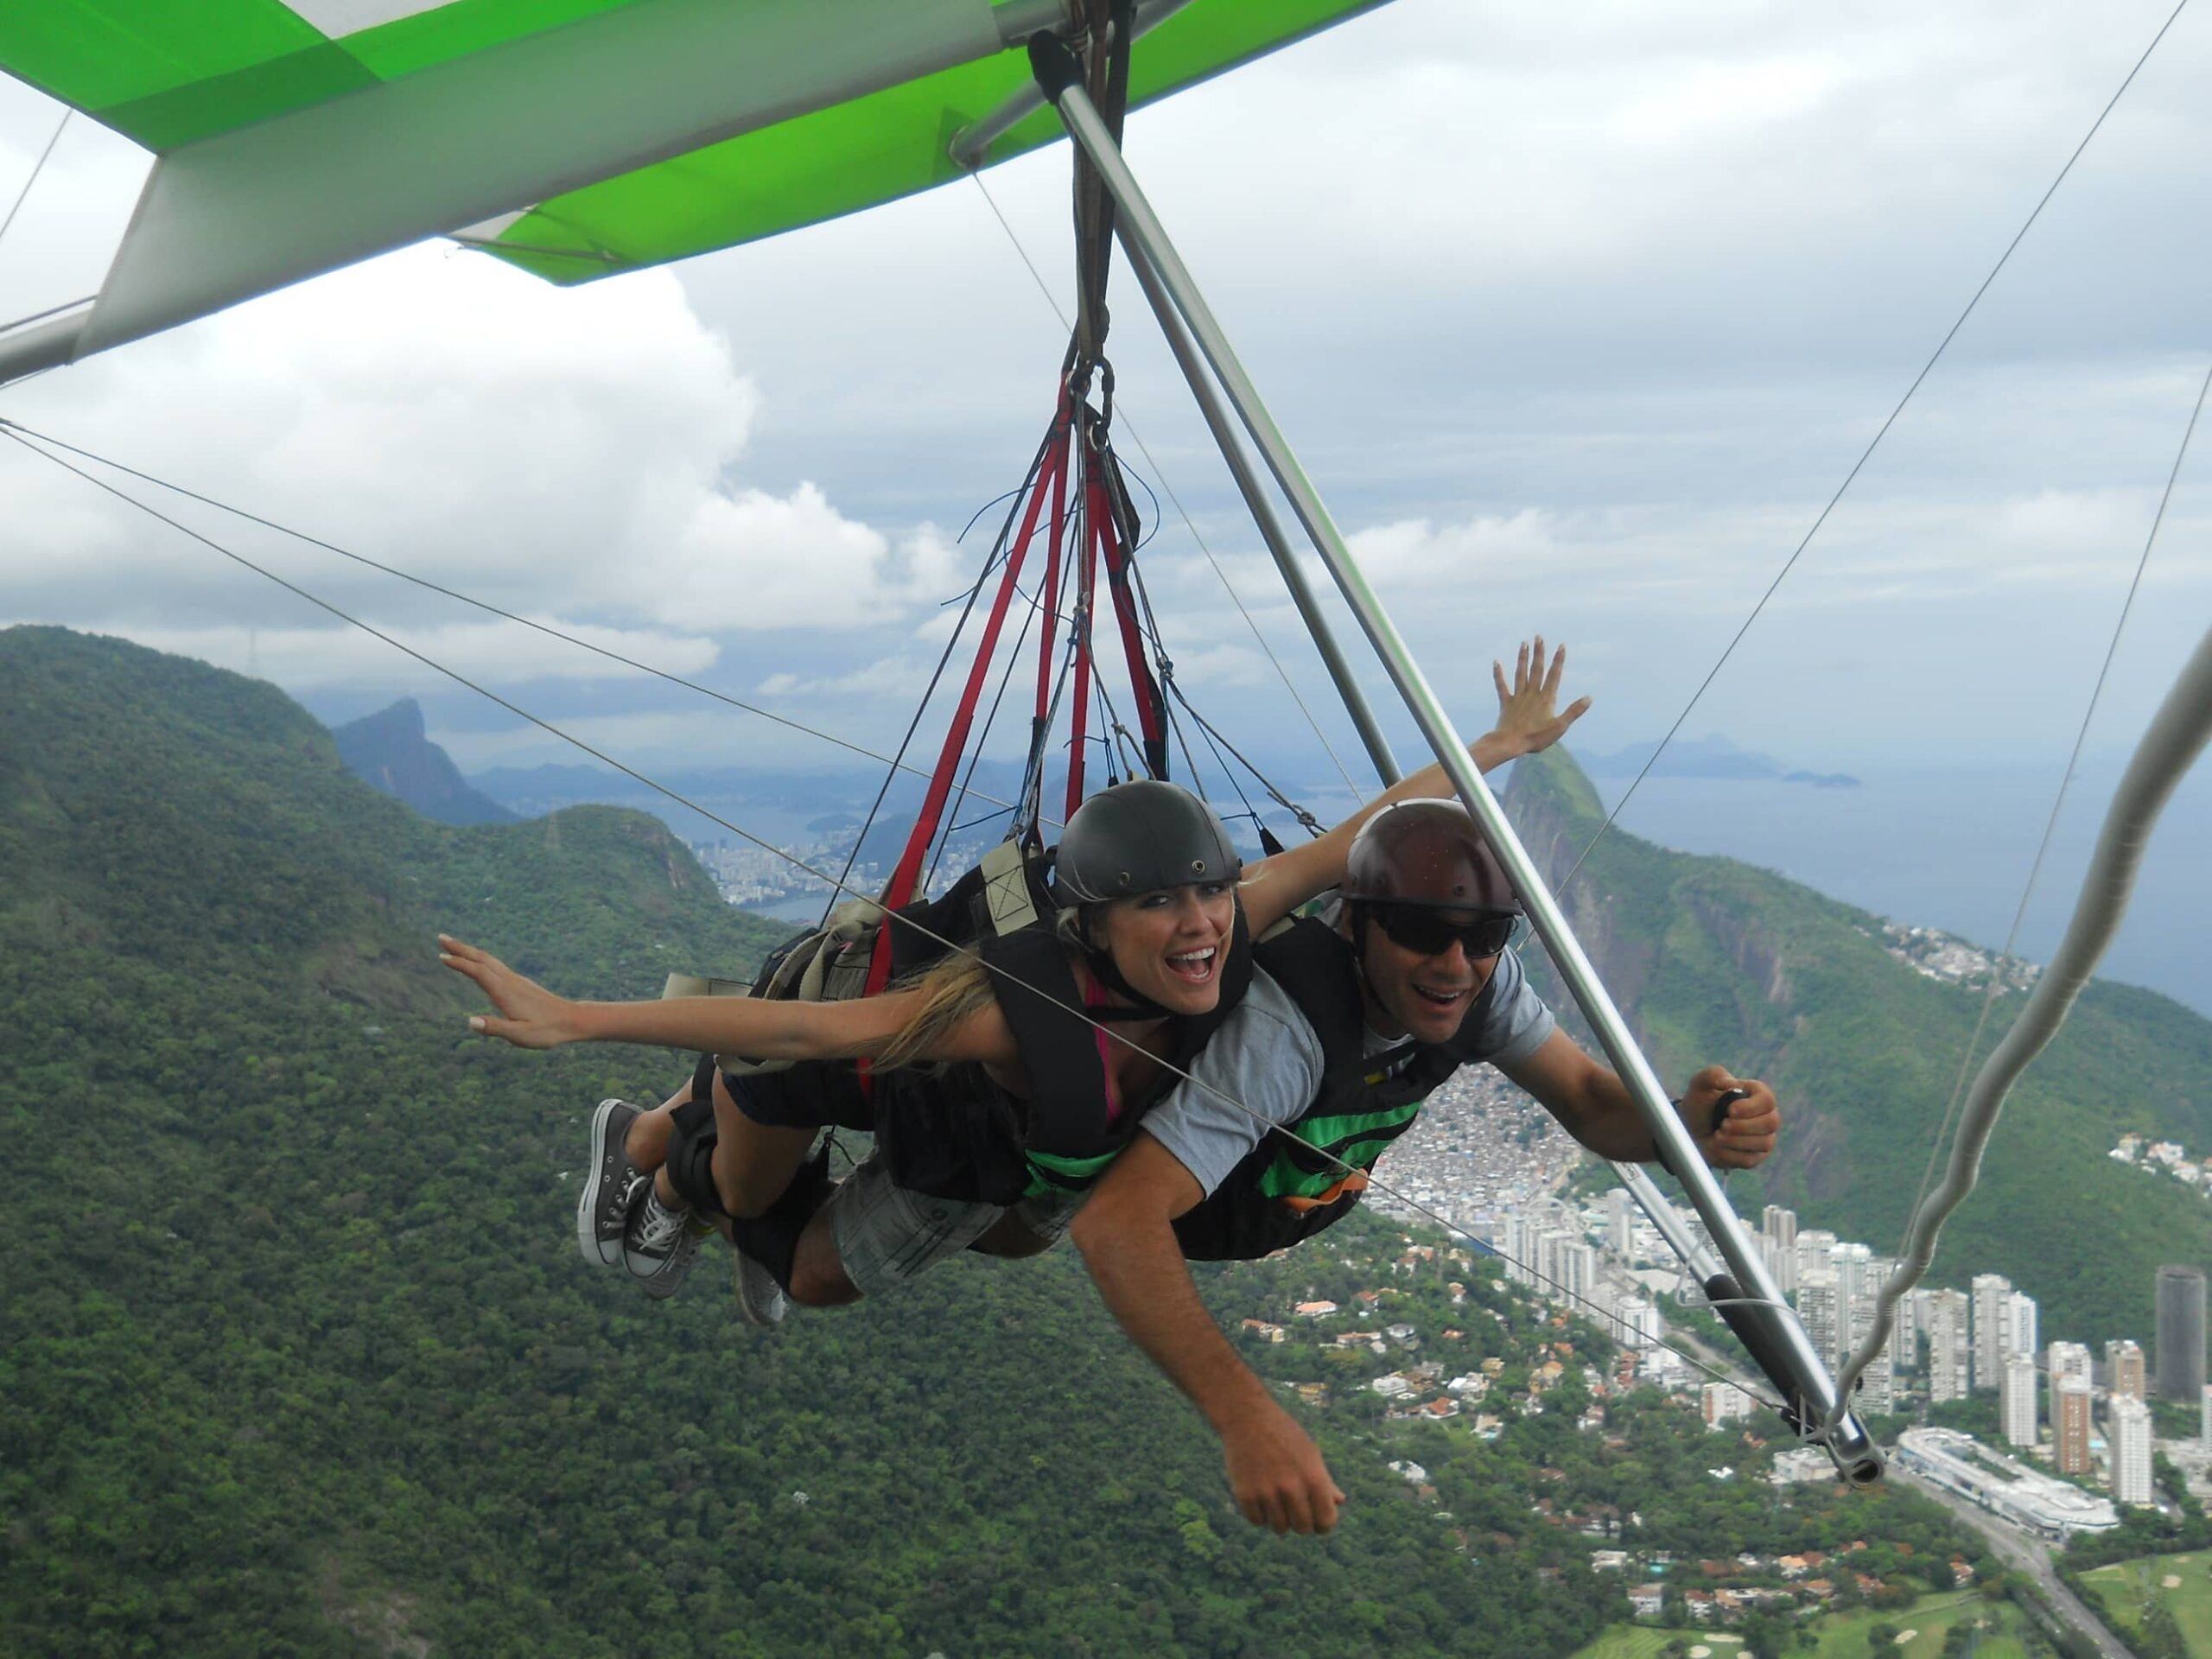 Rio_Hang_Gliding_Corcovado-1-scaled.jpg